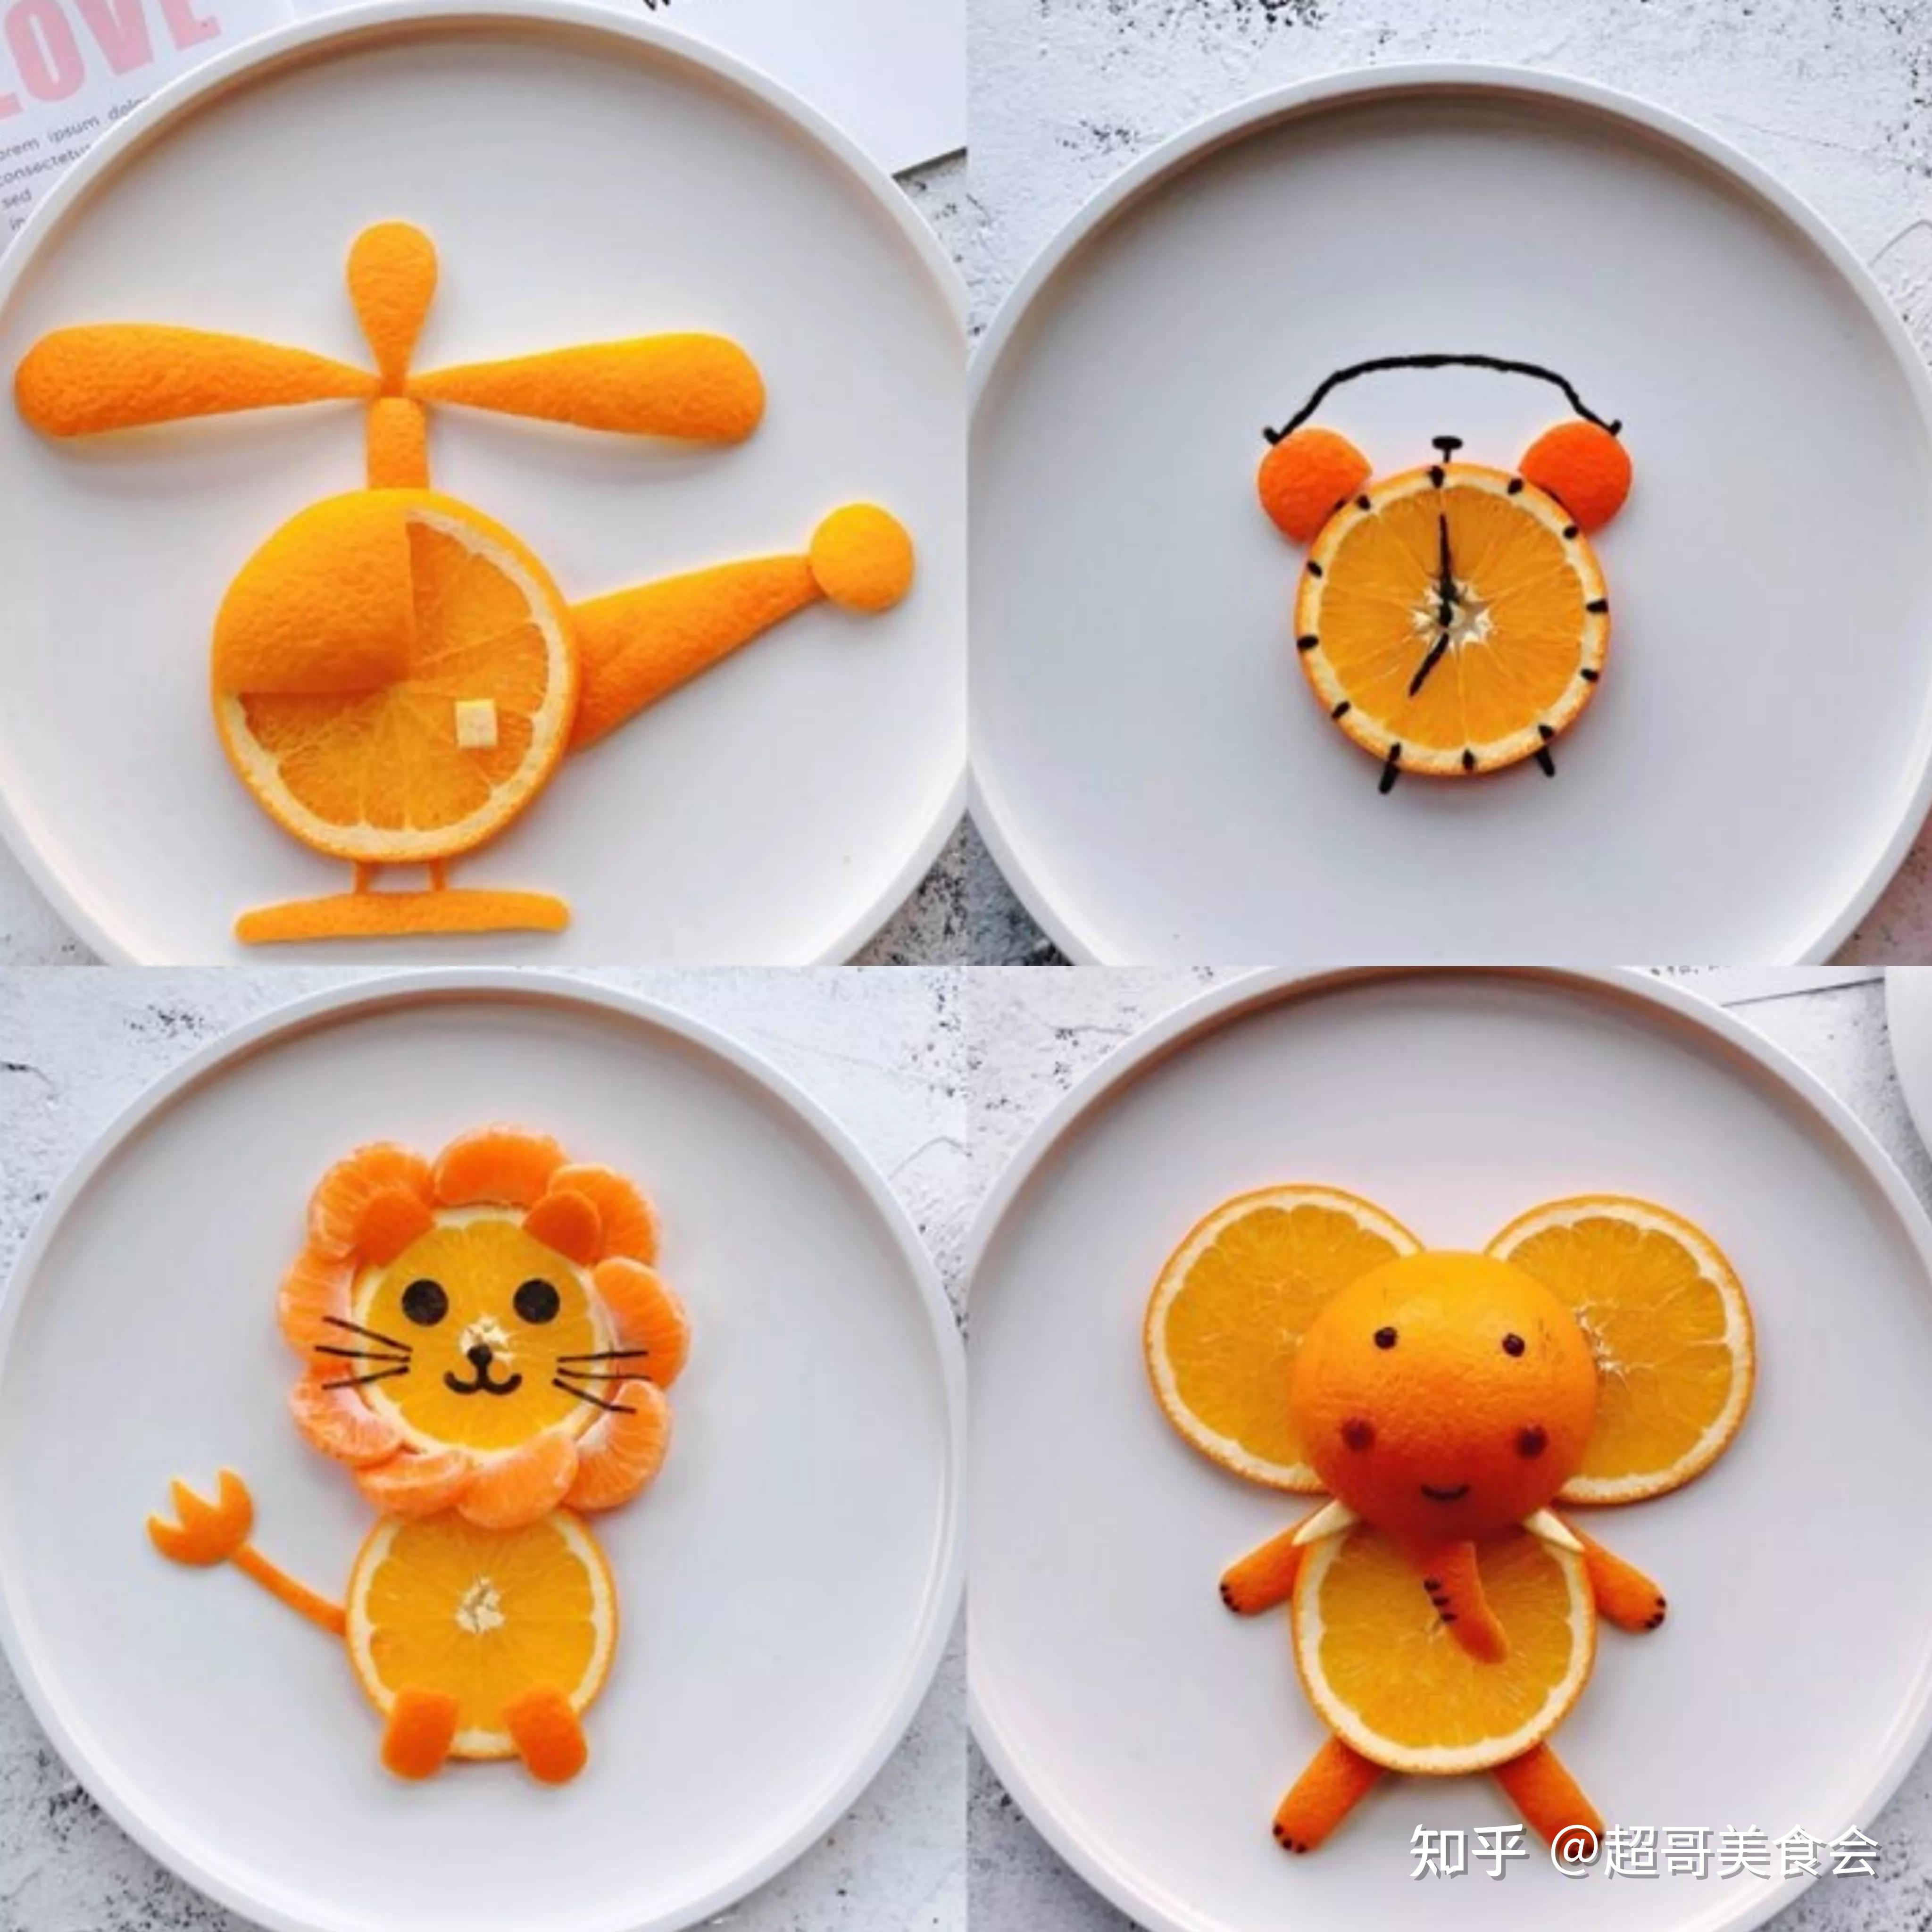 橙子拼盘的做法很简单,大家可以参考上面几种方案,切出更多的小动物